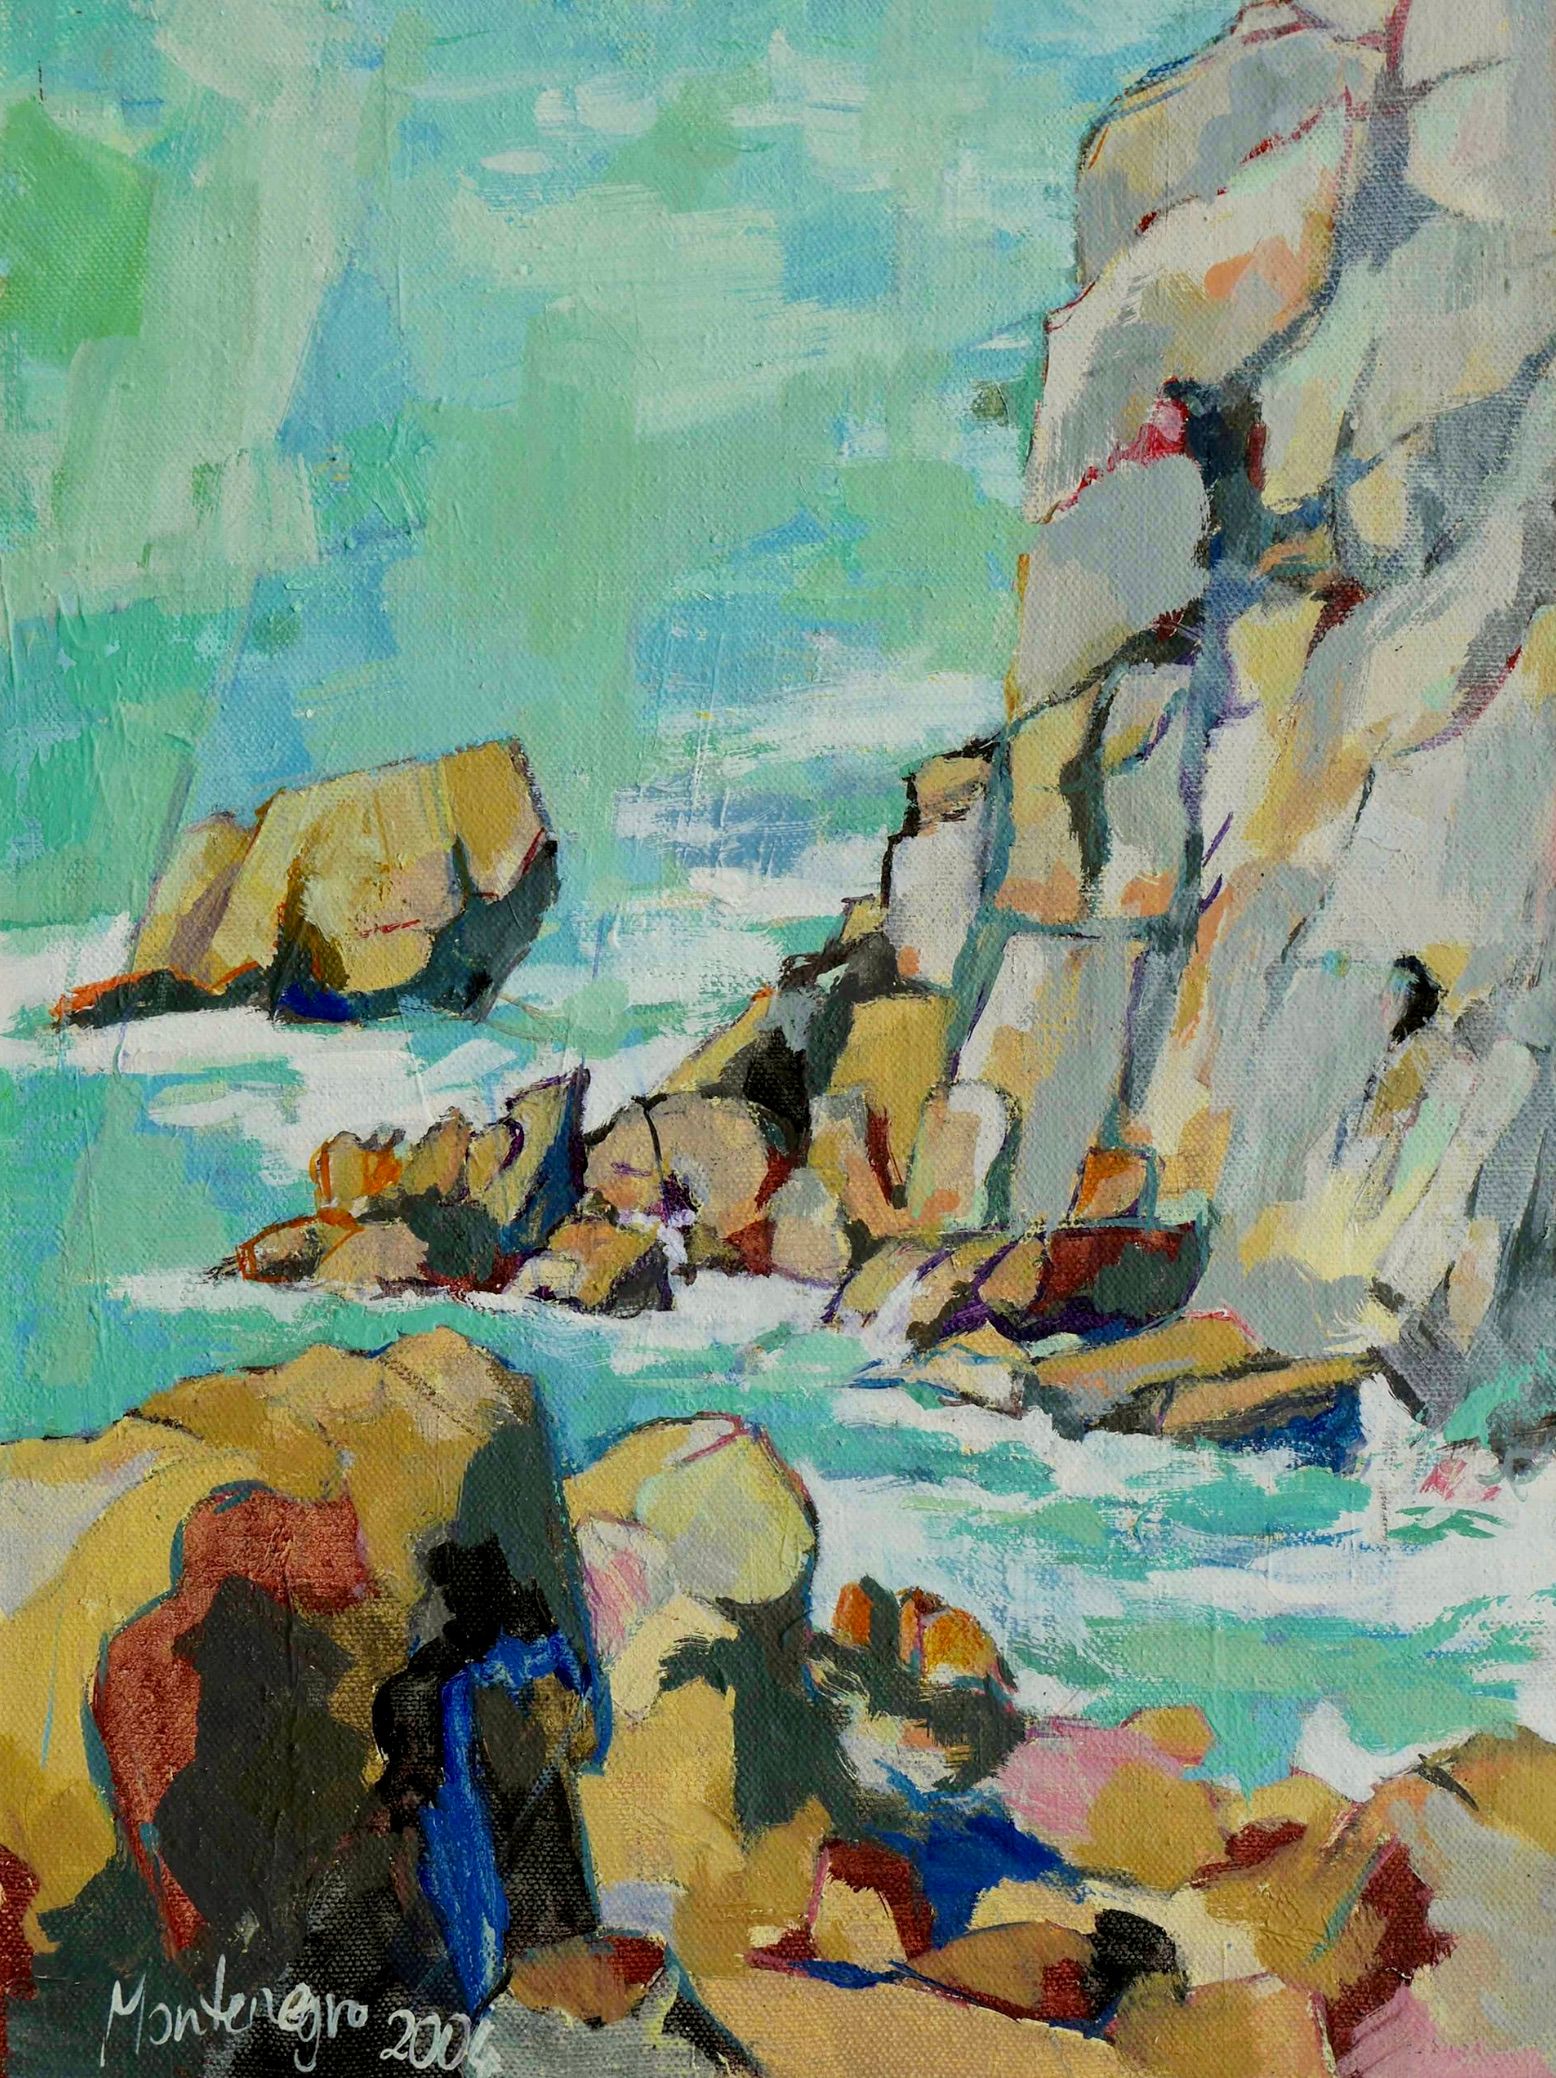 米里亚姆-黑山的表现主义绘画 海边的石头岩石